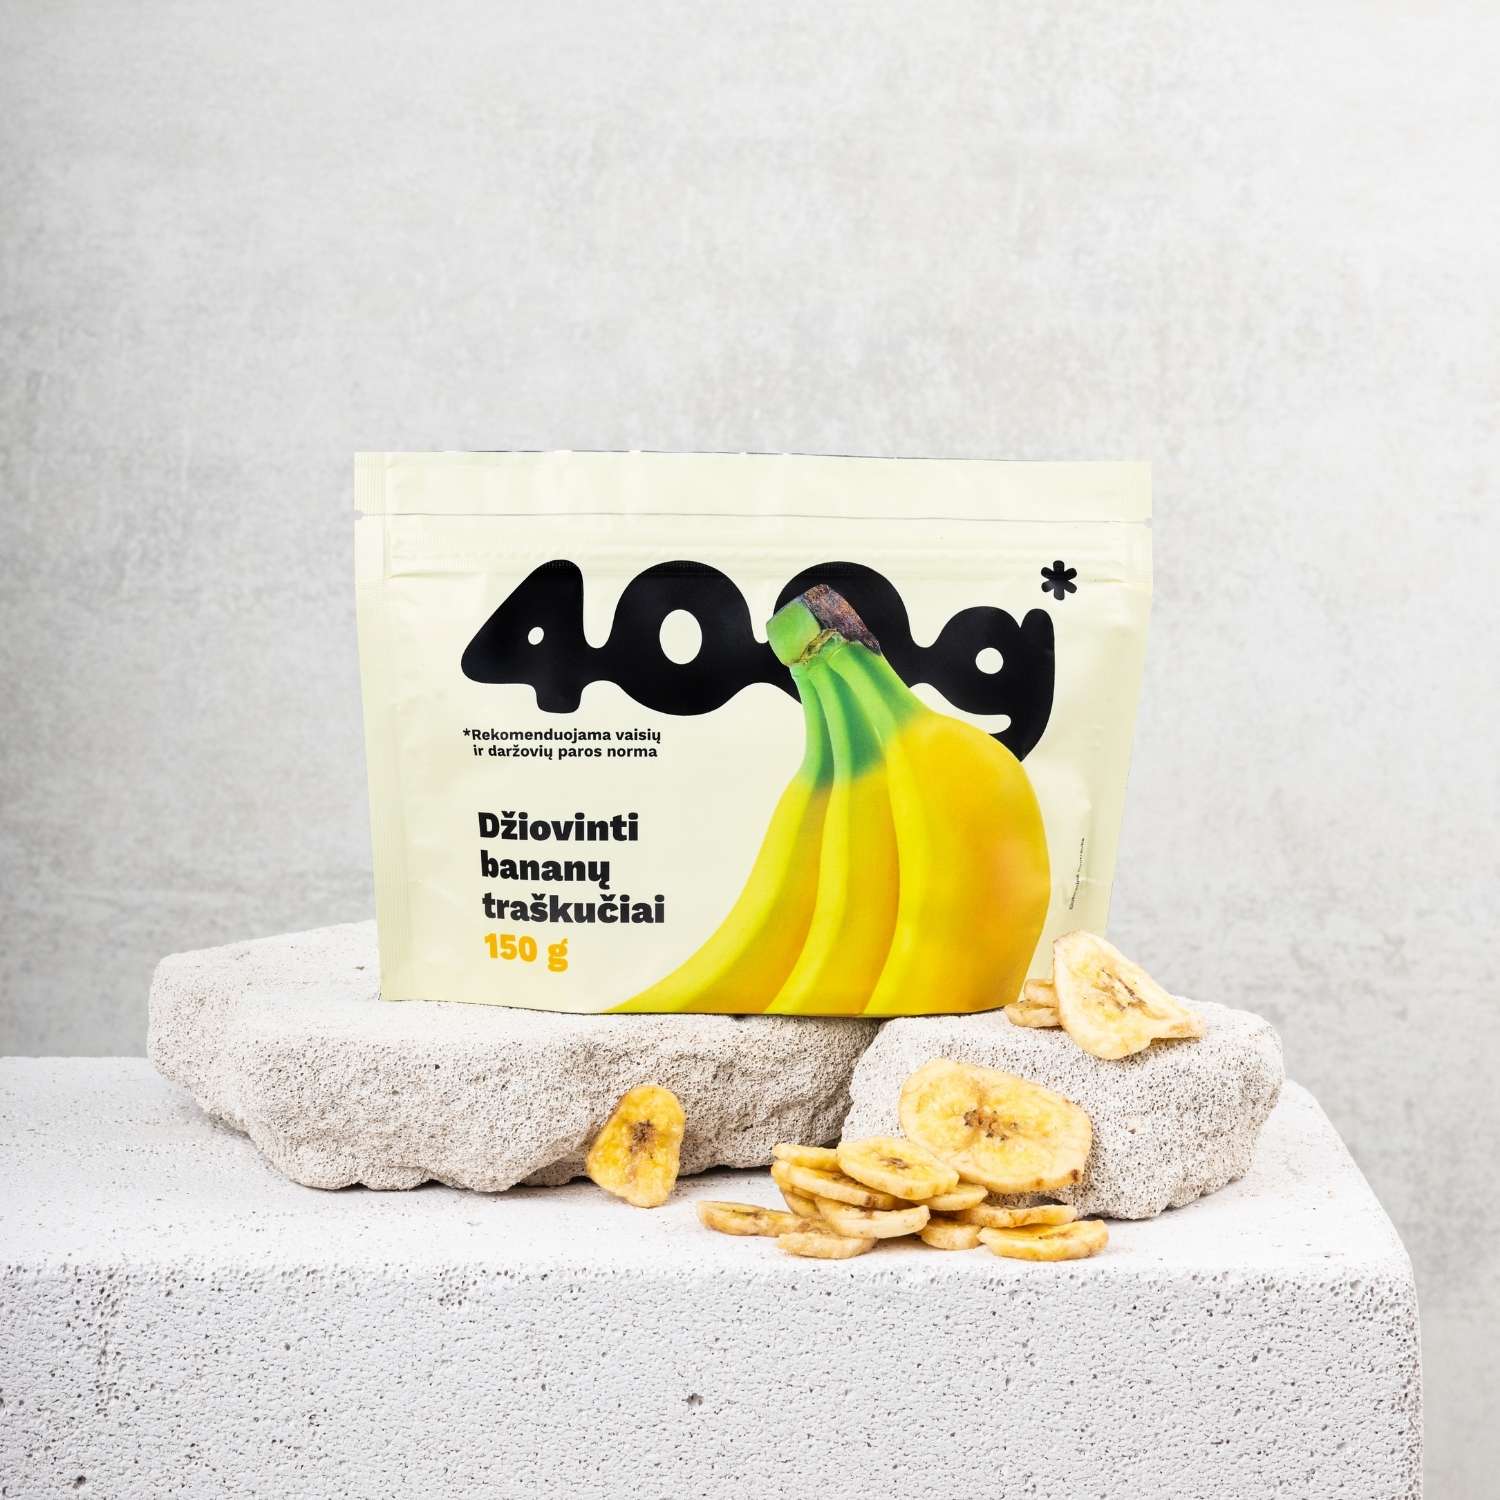 400g* džiovinti bananų traškučiai